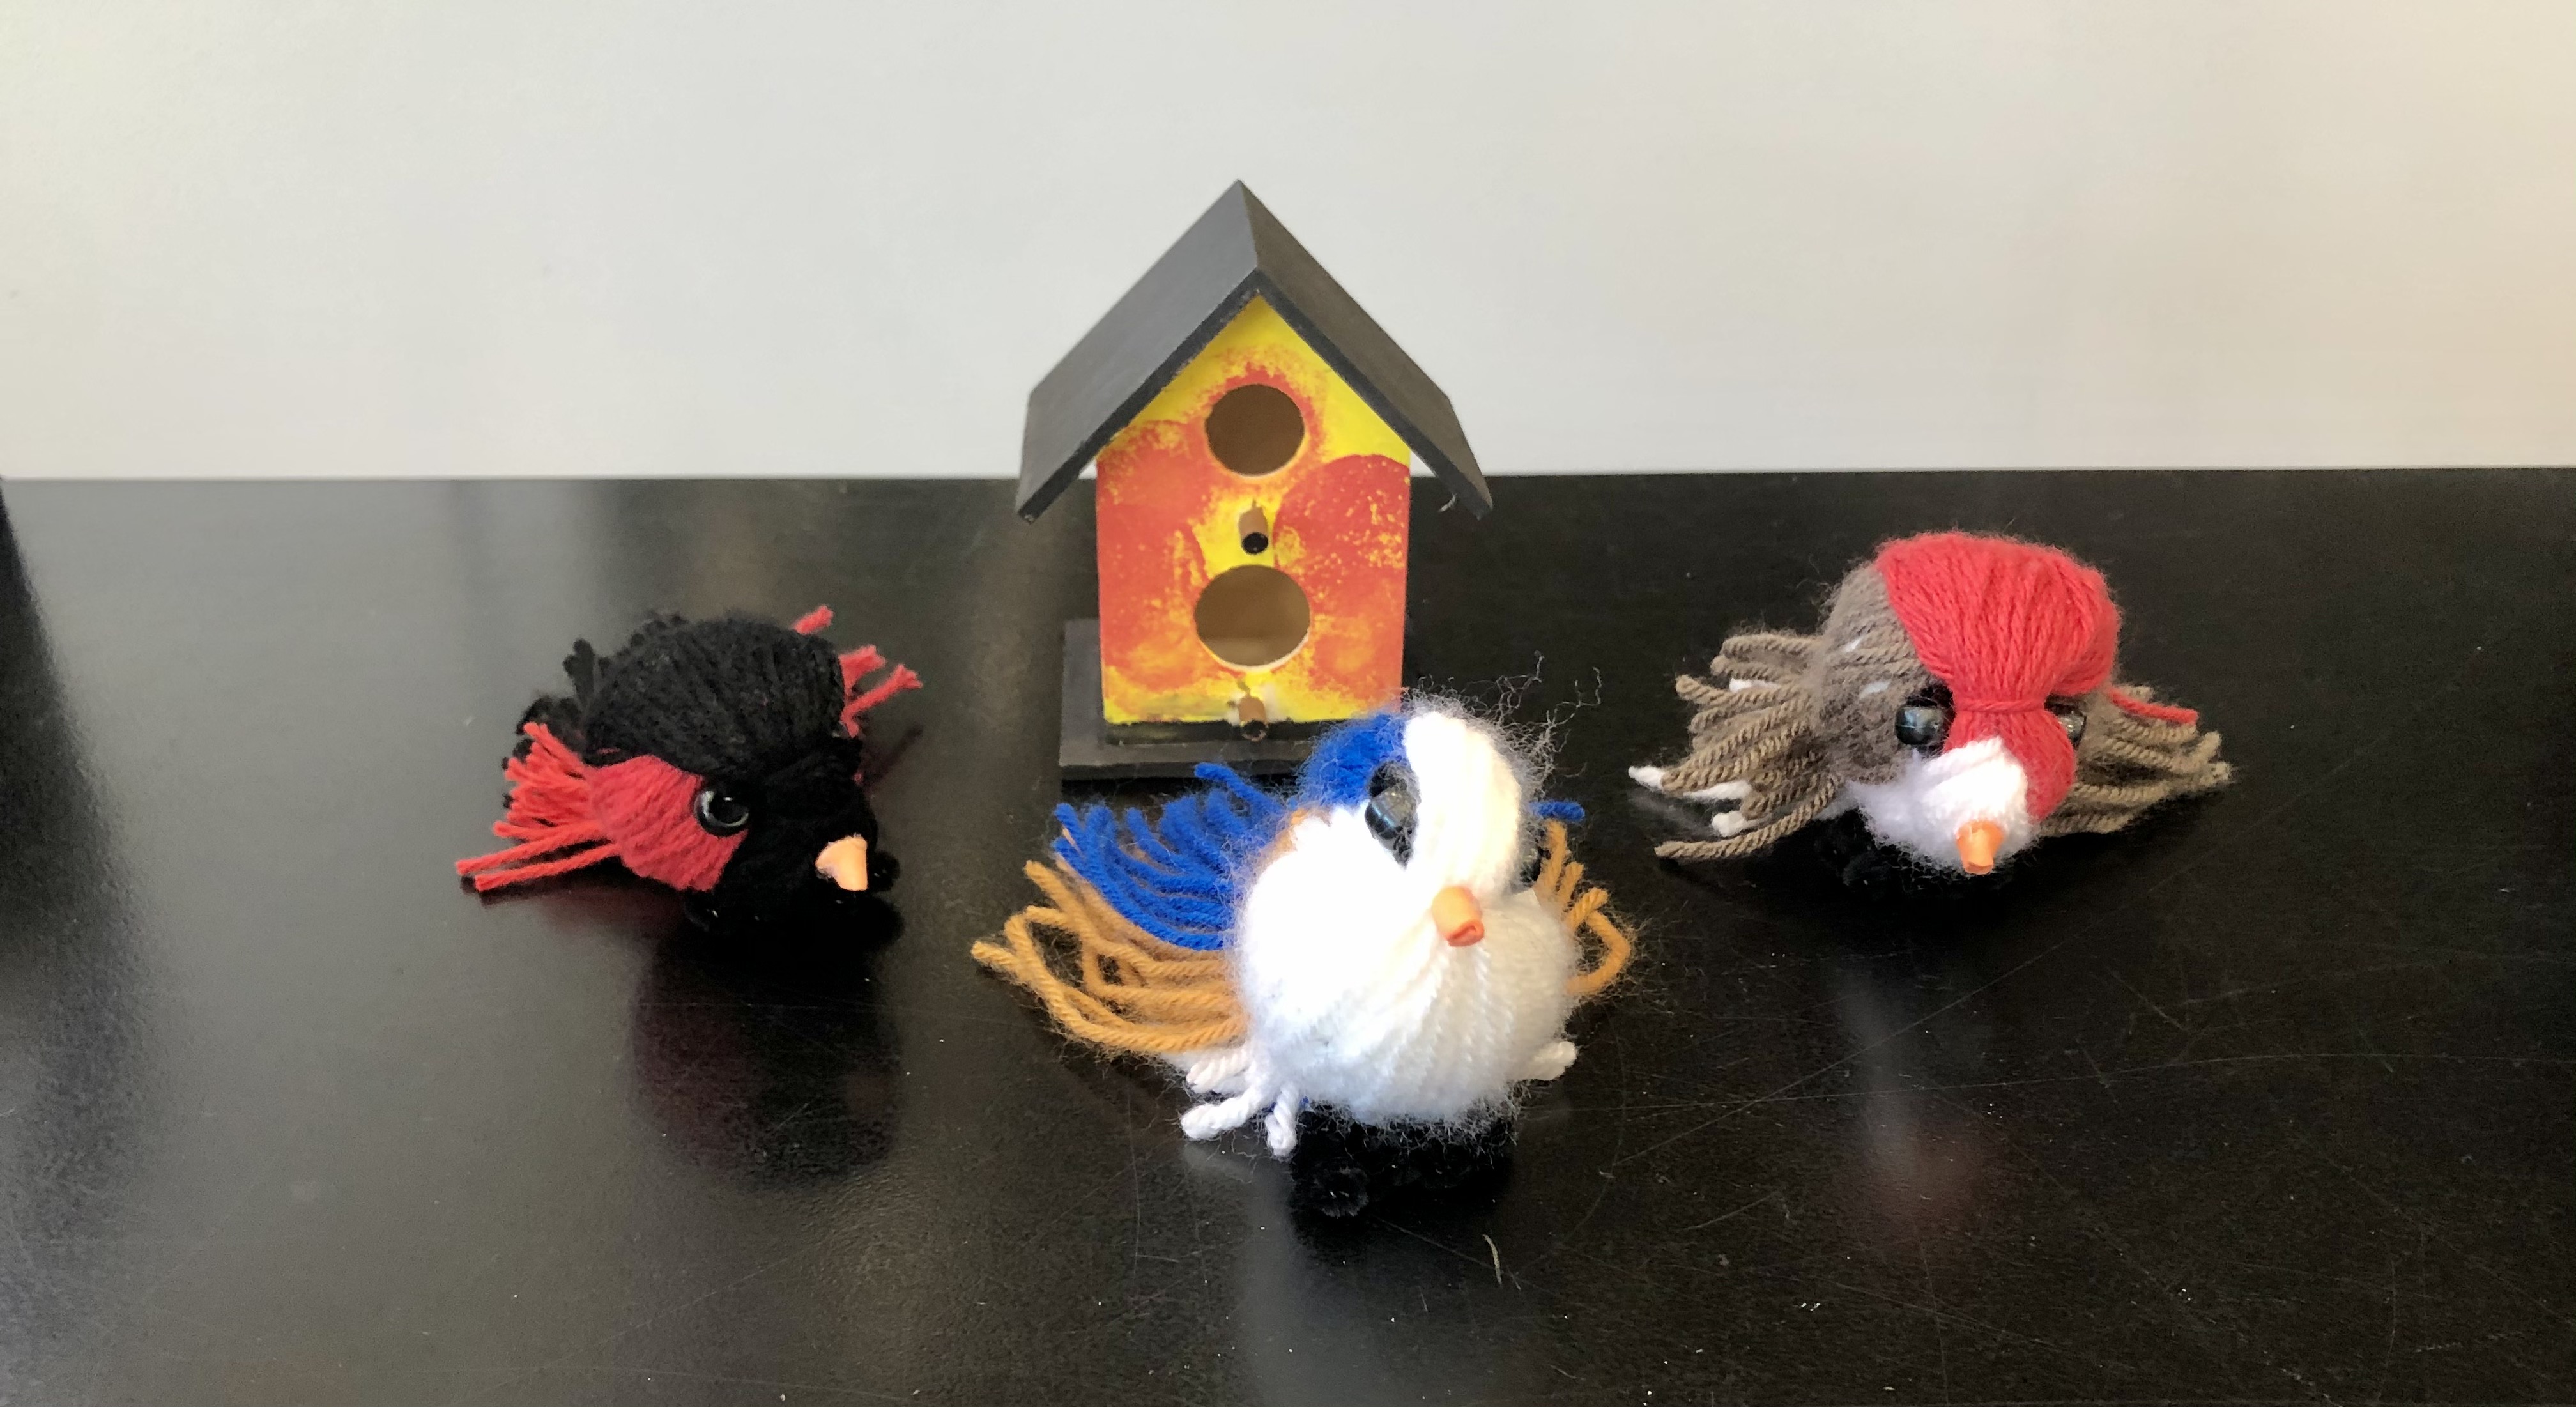 A photo of yarn birds and a min birdhouse.